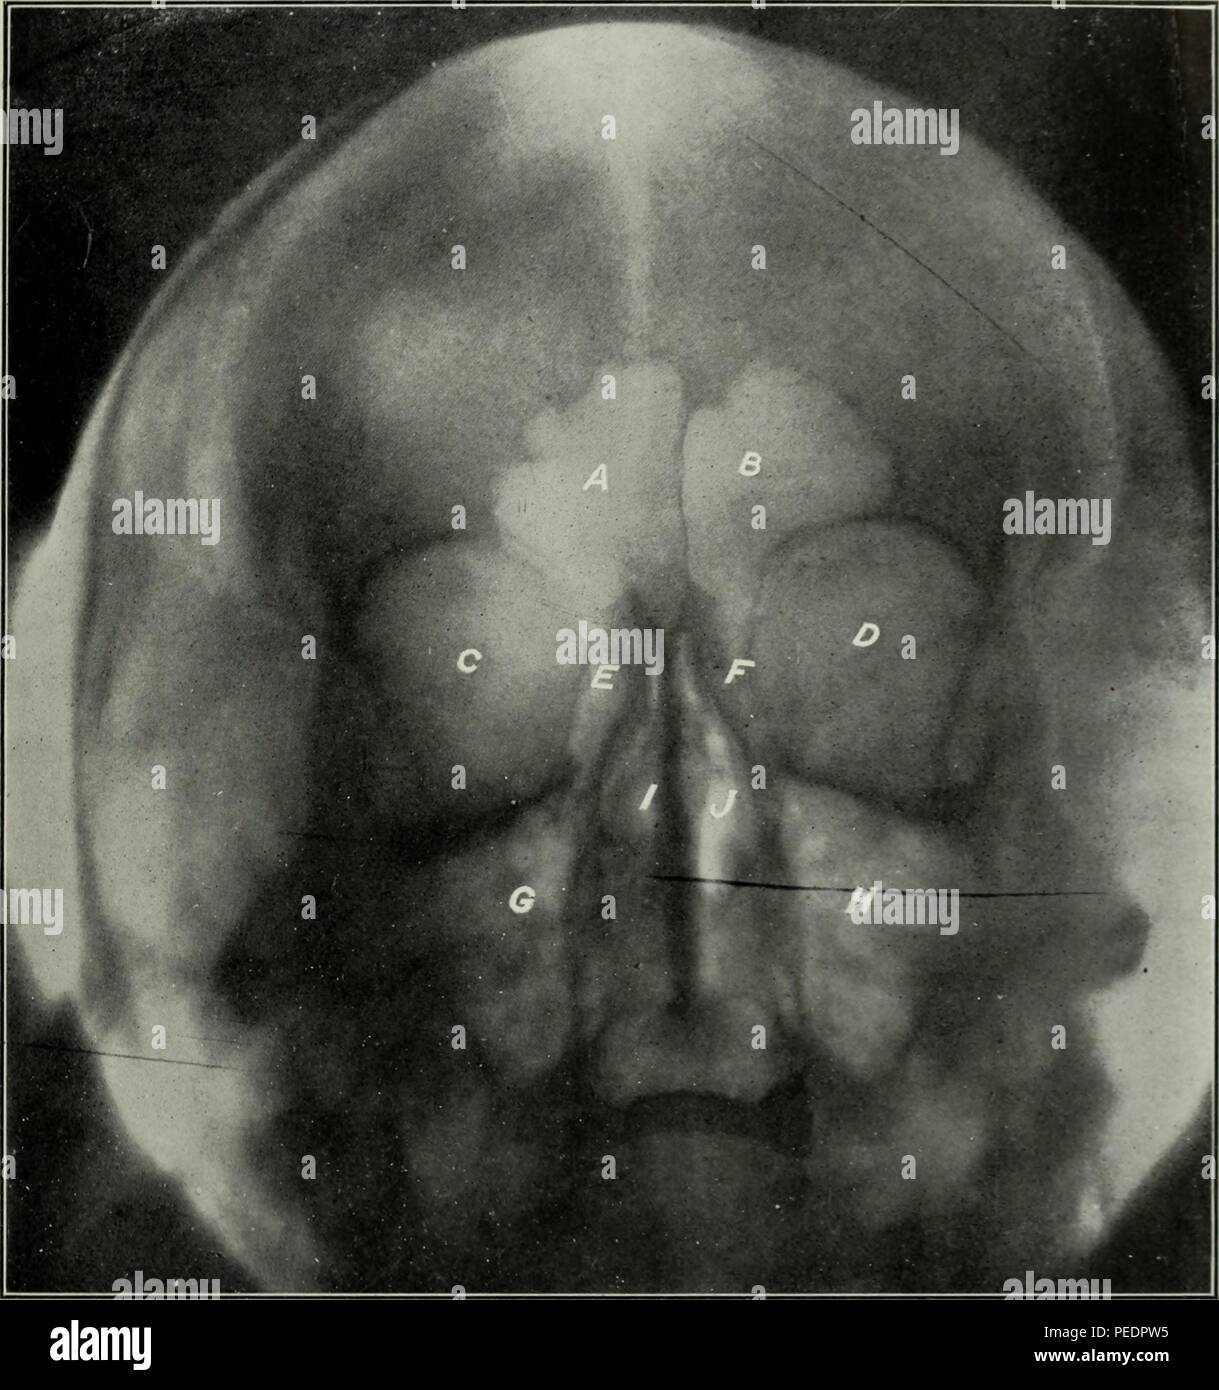 Noir et blanc, le début du vingtième siècle, la radiographie dentaire, avec des lettres de l'étiquetage et les sinus frontal ethmoïde, orbites, et la cavité nasale, 1825. Avec la permission de Internet Archive. () Banque D'Images